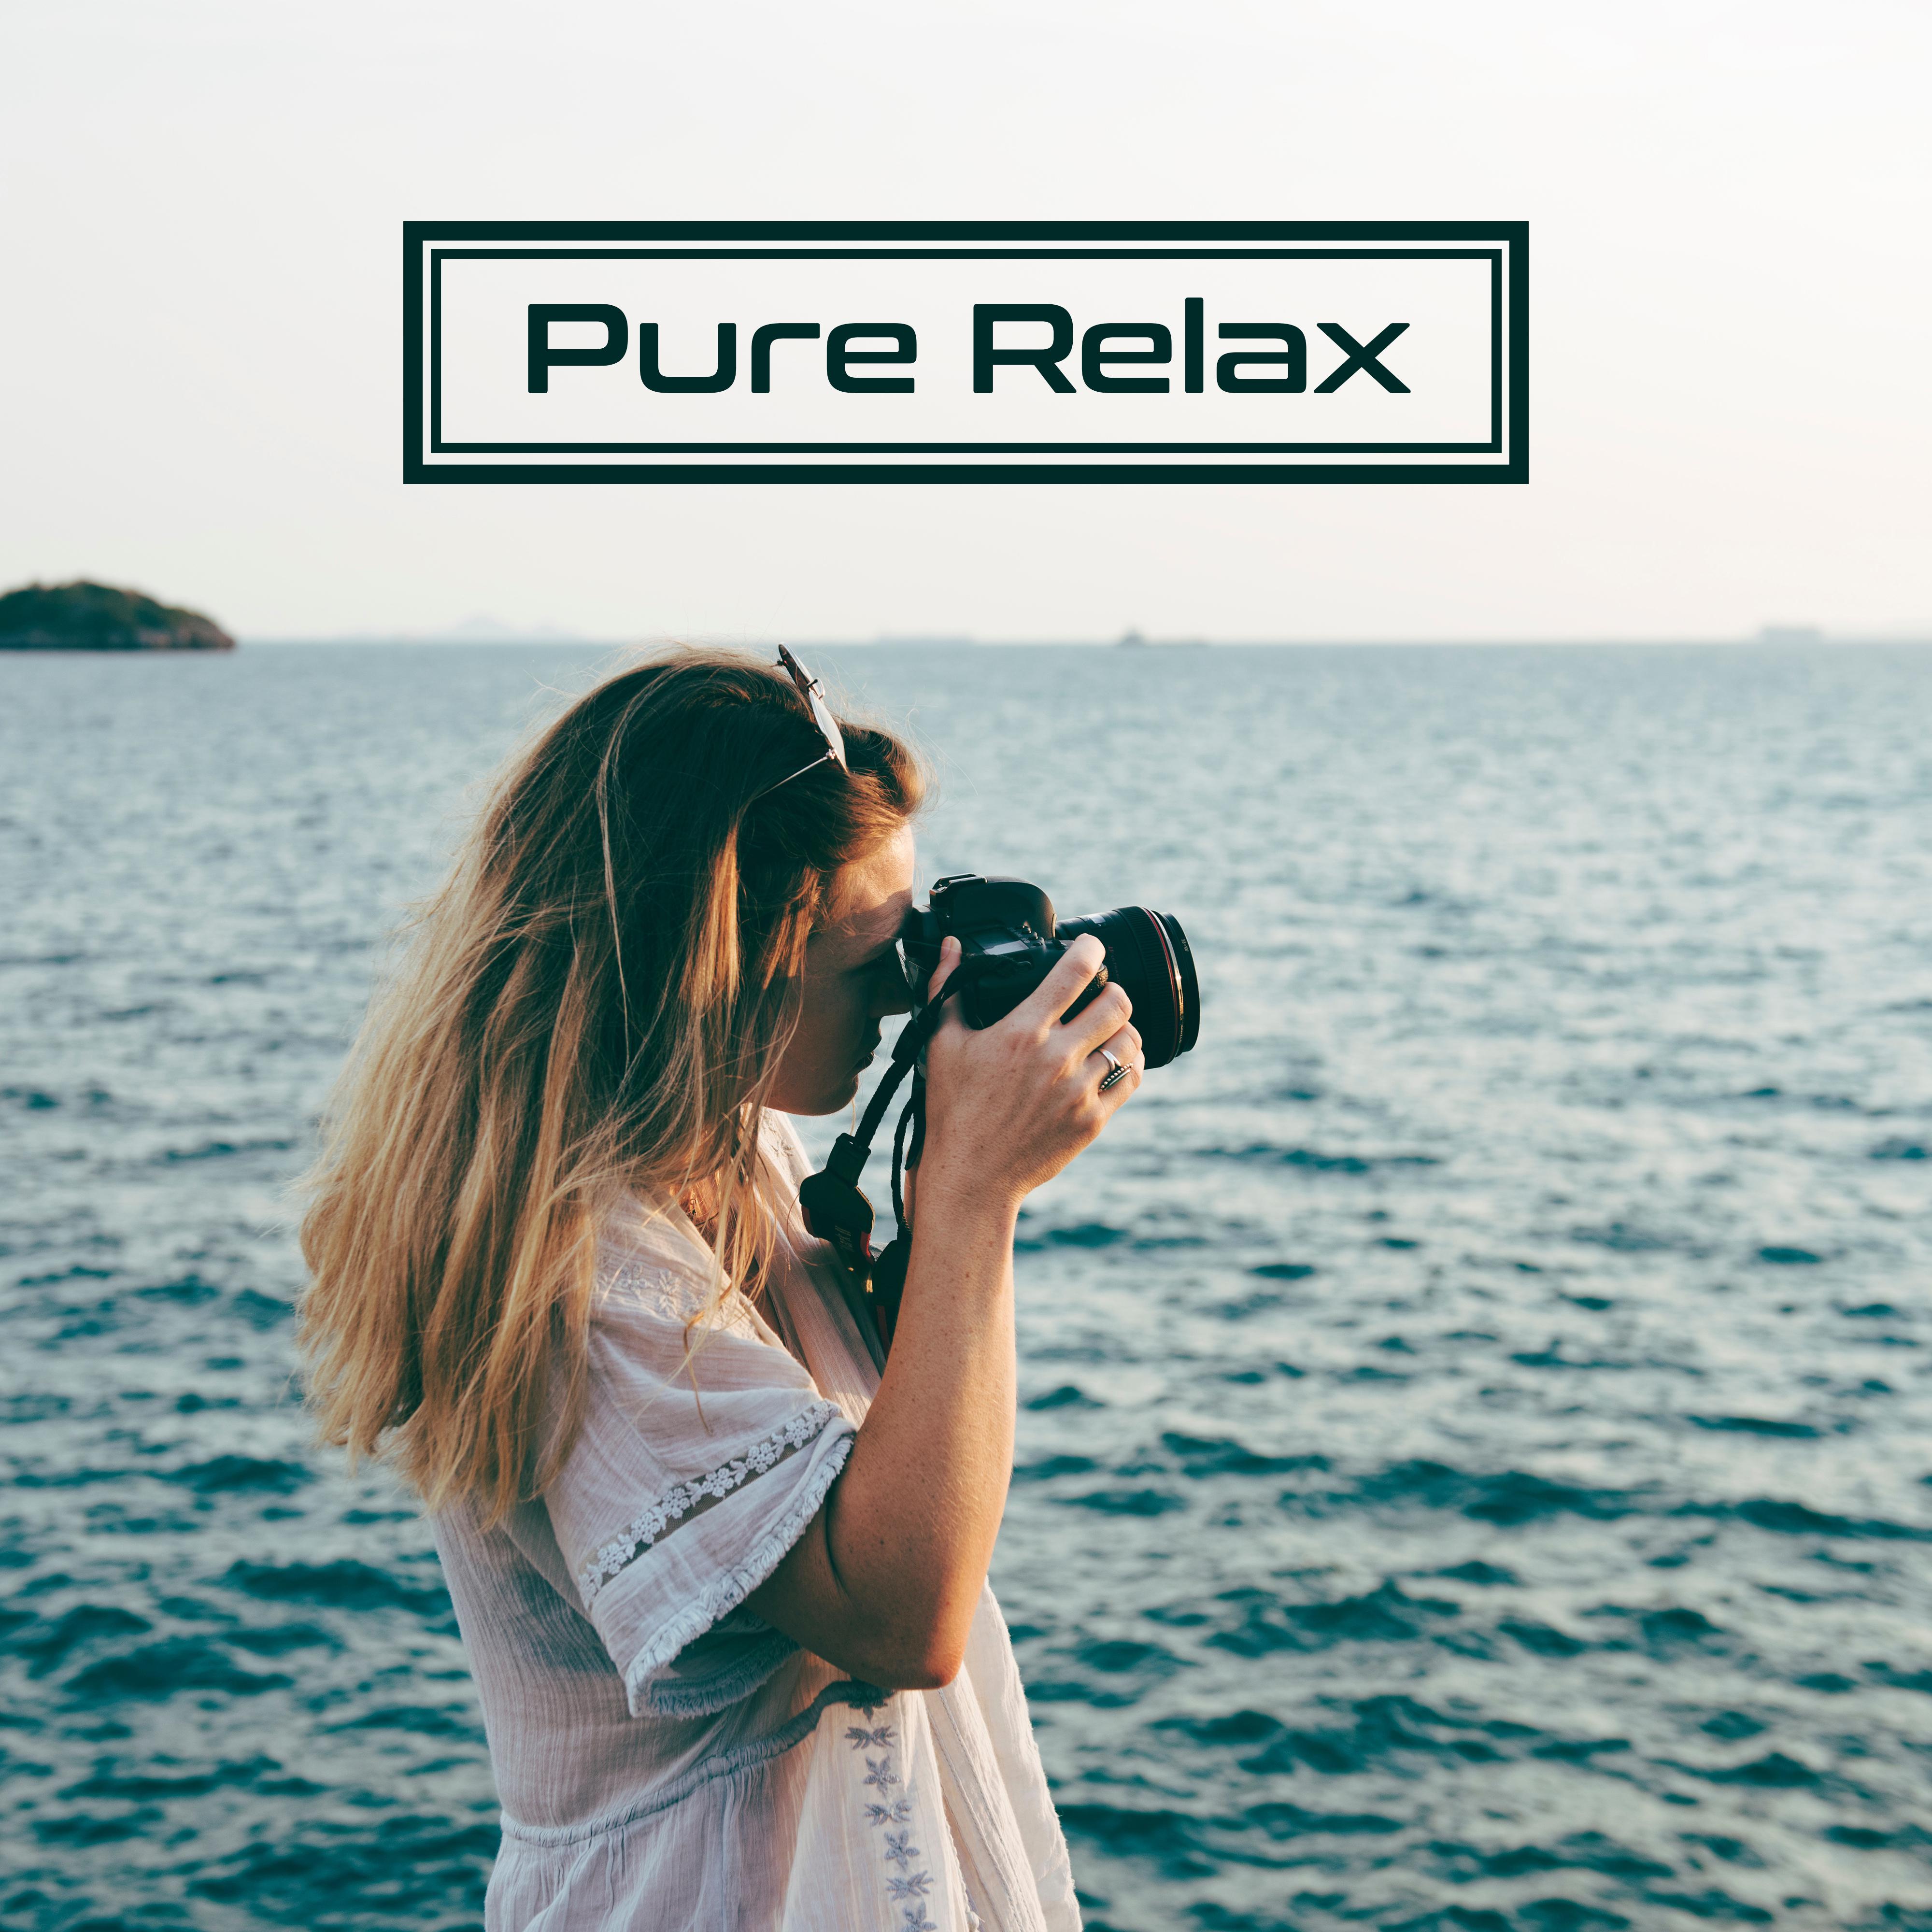 Pure Relax – New Age 2017, Relaxing Music, Calmness, Zen, Rest, Bliss